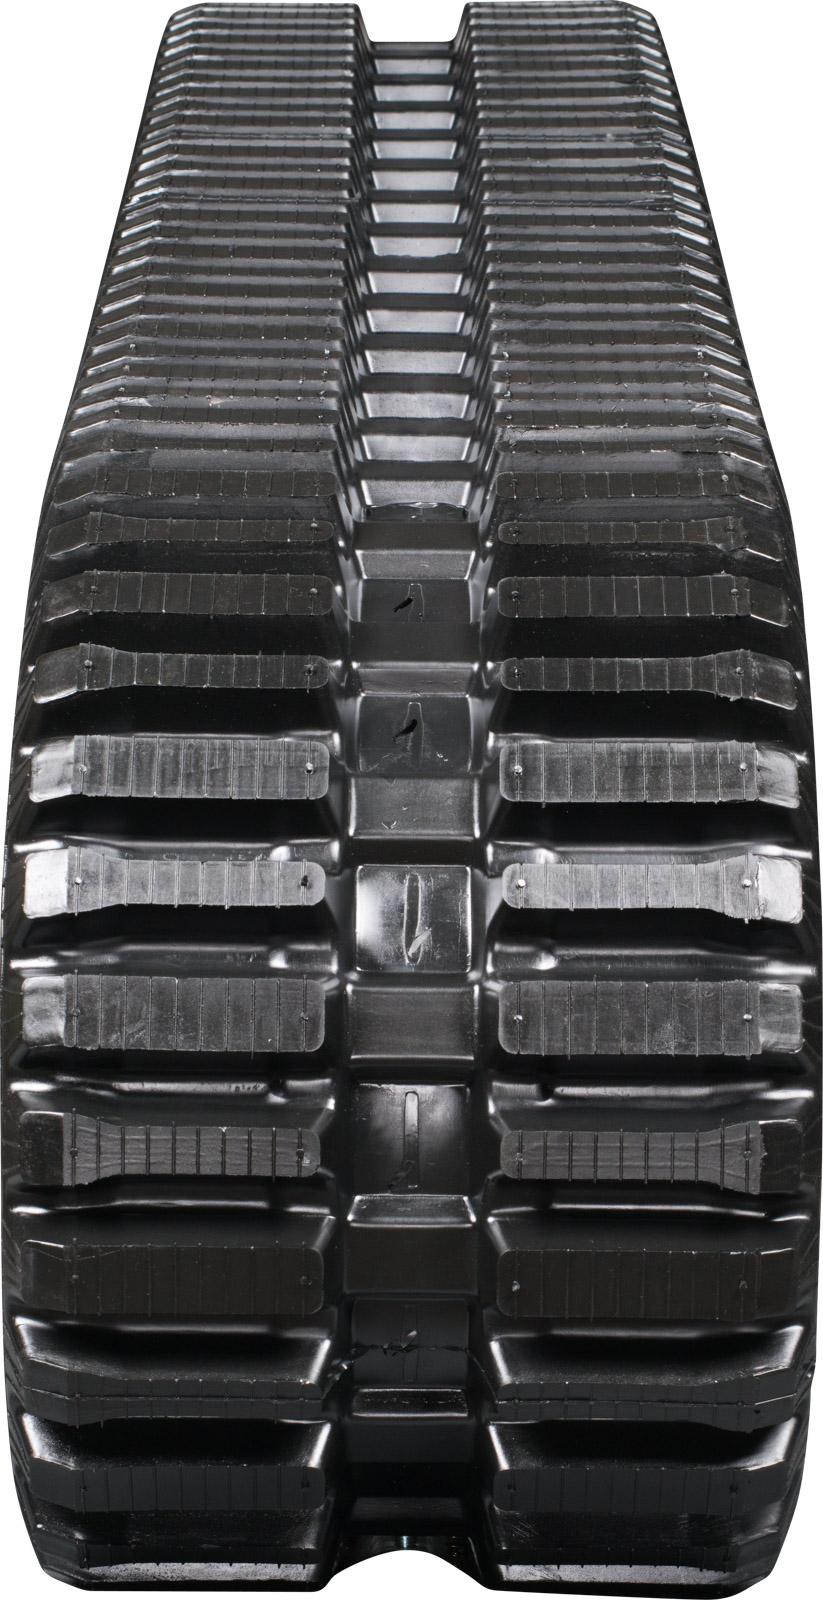 set of 2 13" heavy duty multi-bar pattern rubber track (320x86bx53)